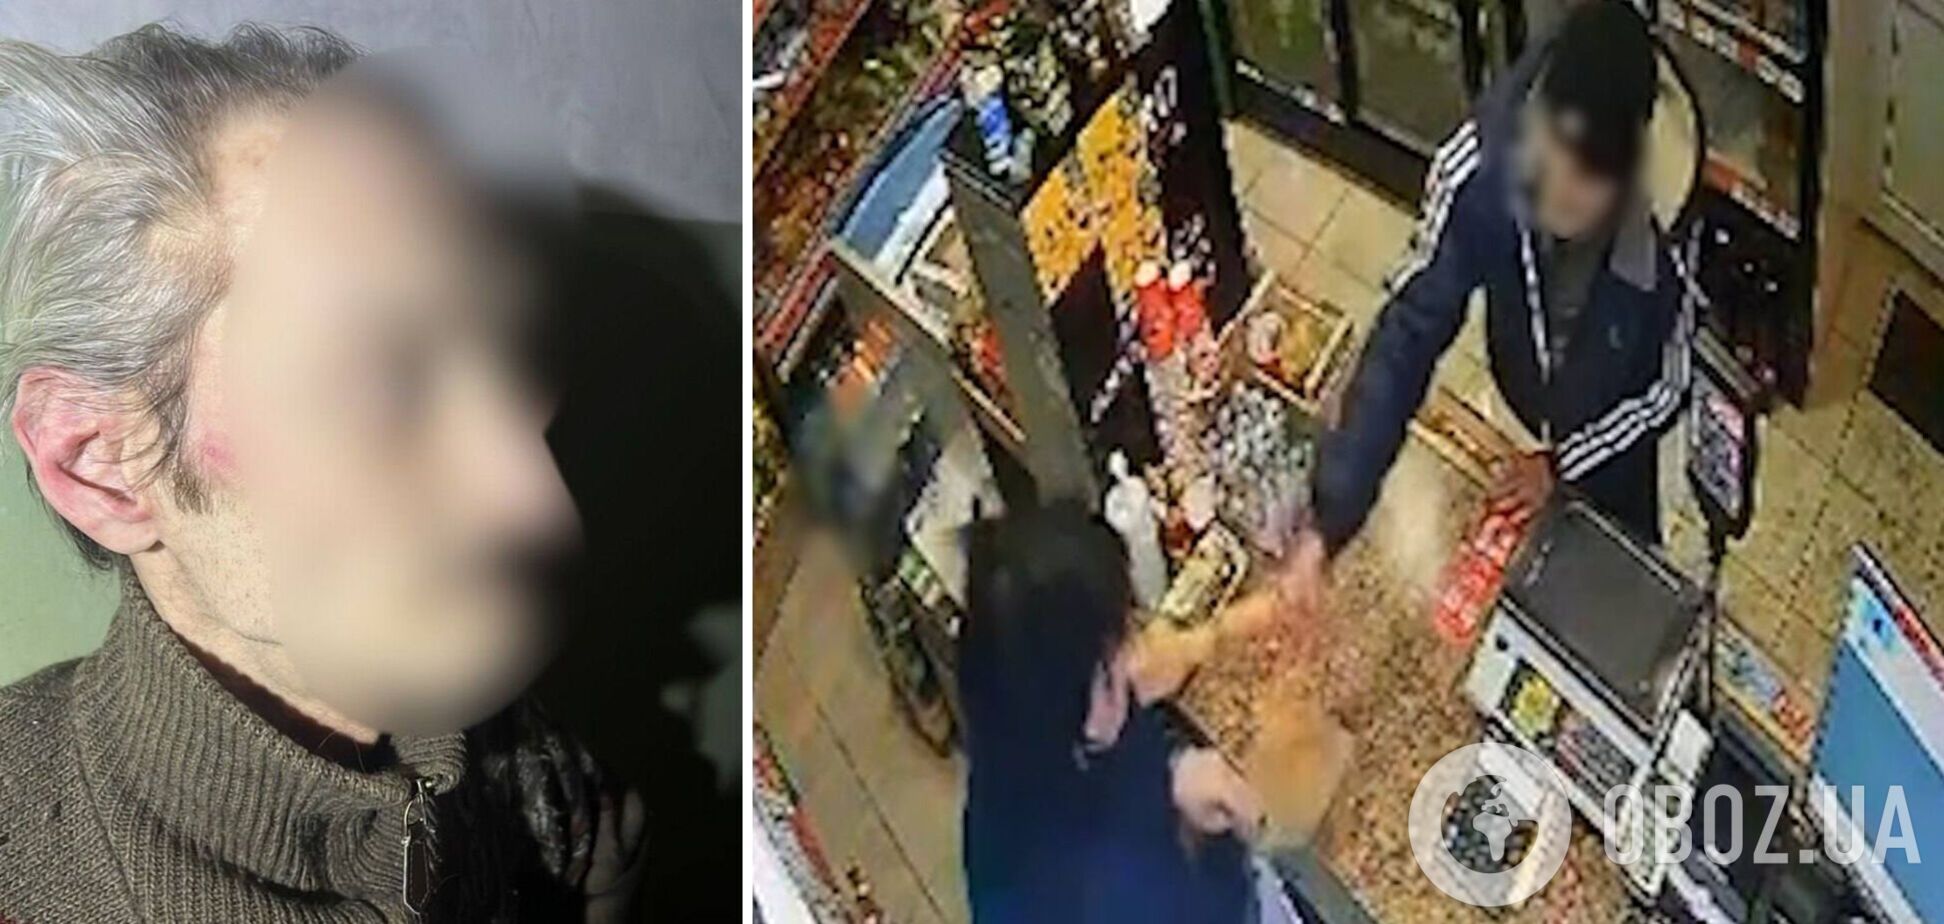 'Наши люди – несгибаемы': в Обухове продавщица надавала пинков хулигану, набросившемуся на нее с палкой в магазине. Видео